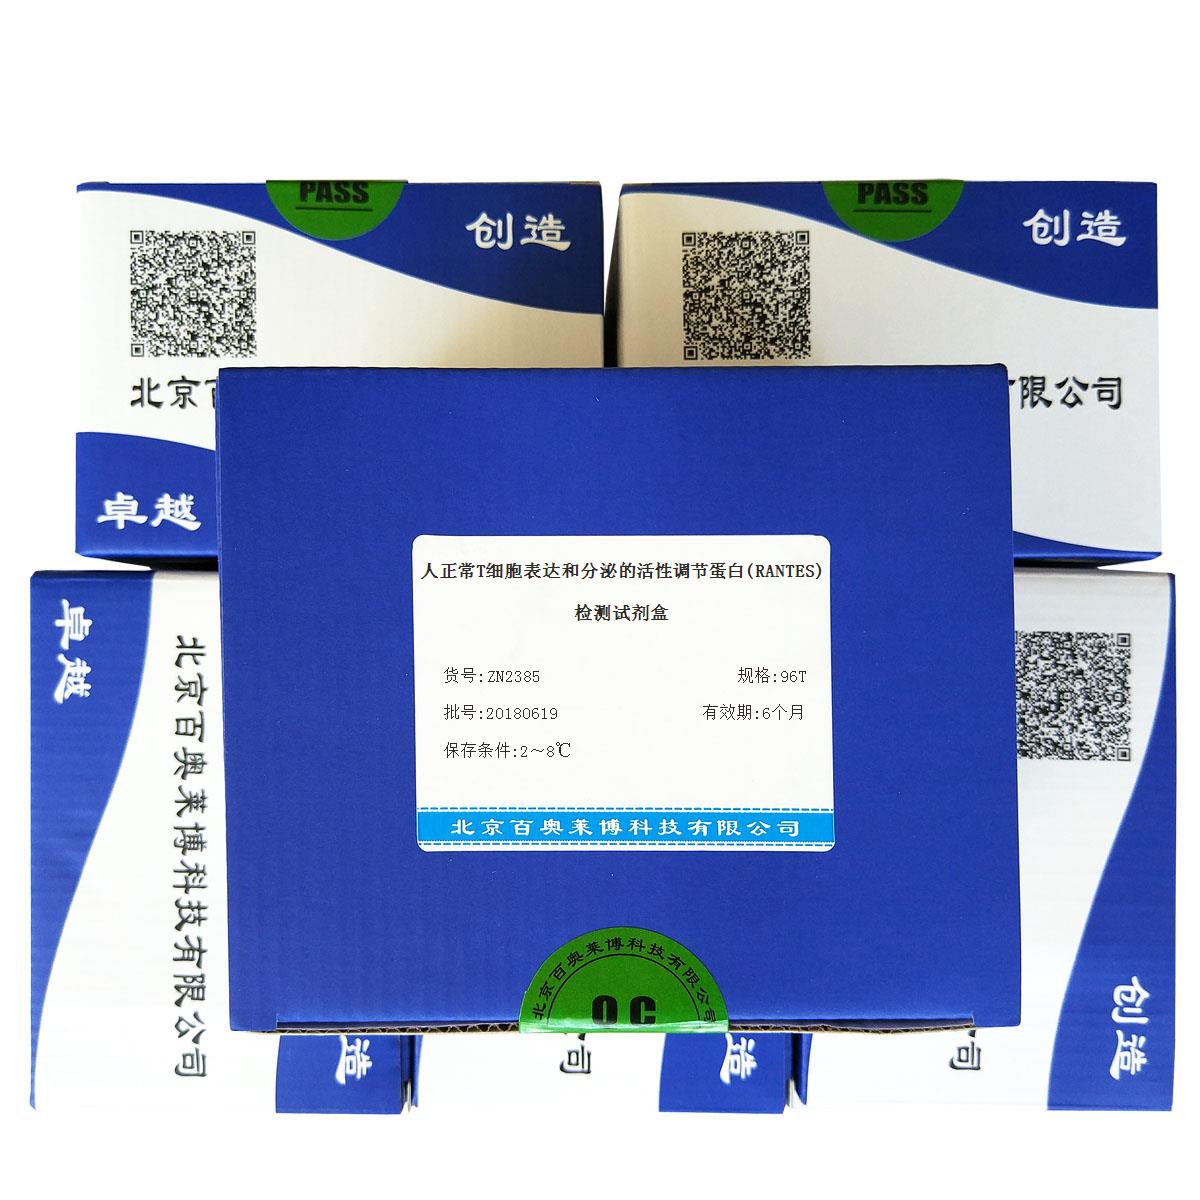 北京现货人正常T细胞表达和分泌的活性调节蛋白(RANTES)检测试剂盒厂家直销